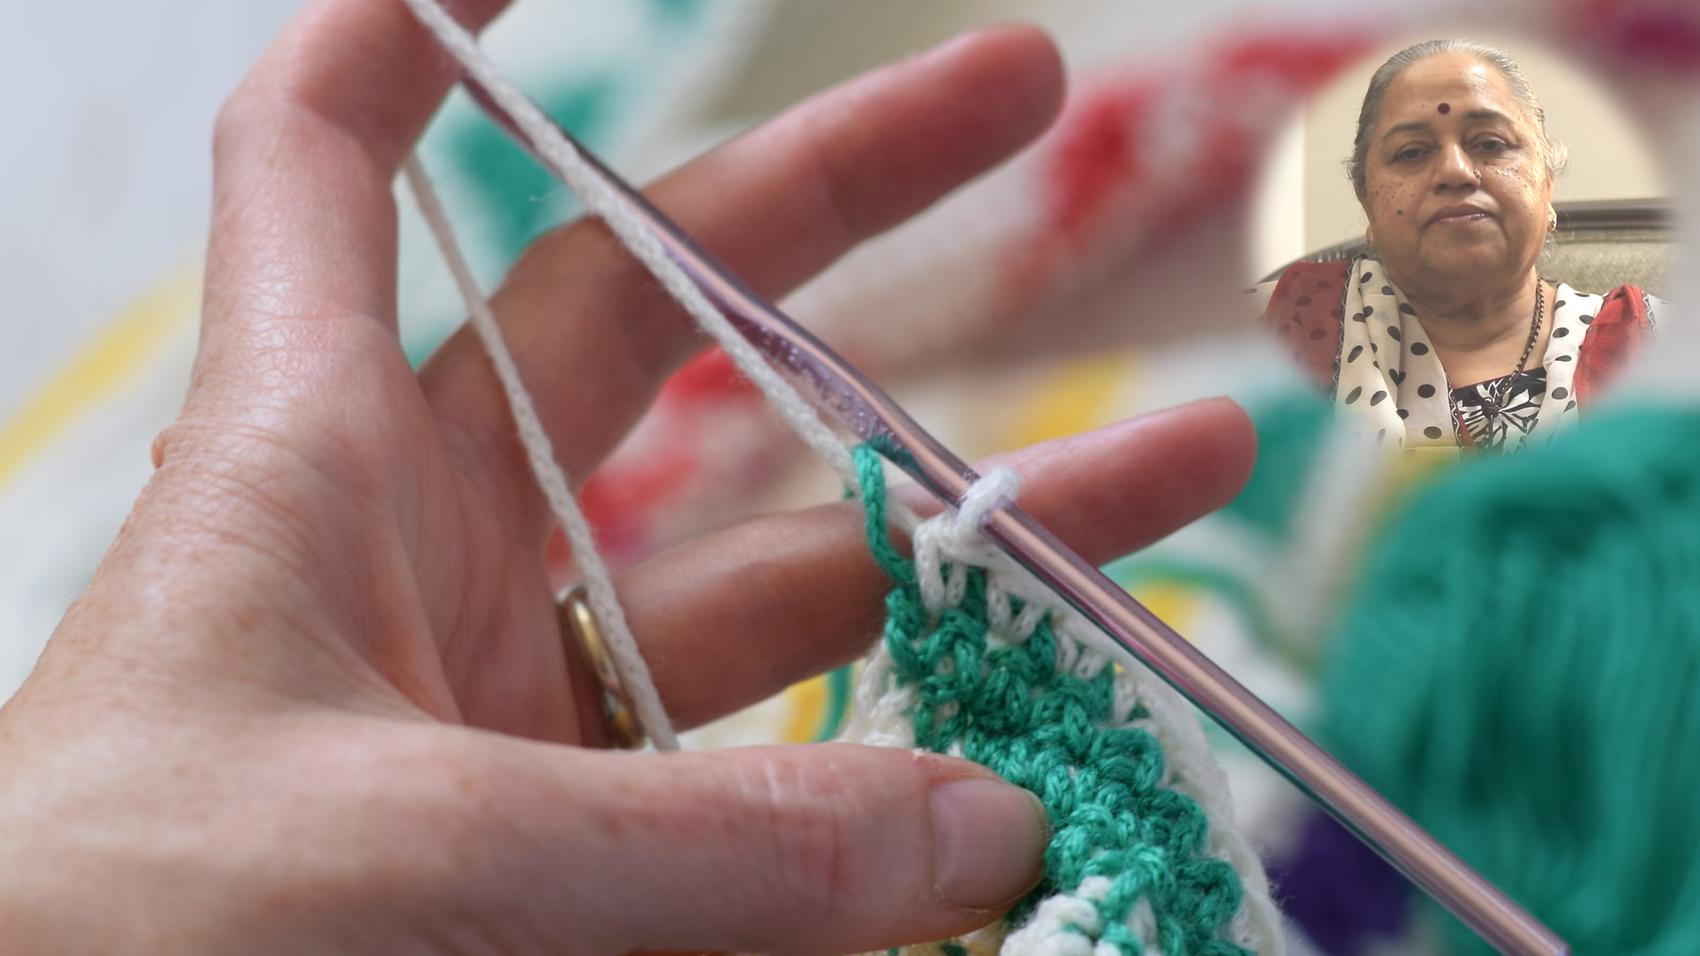 Career in Crochet Making